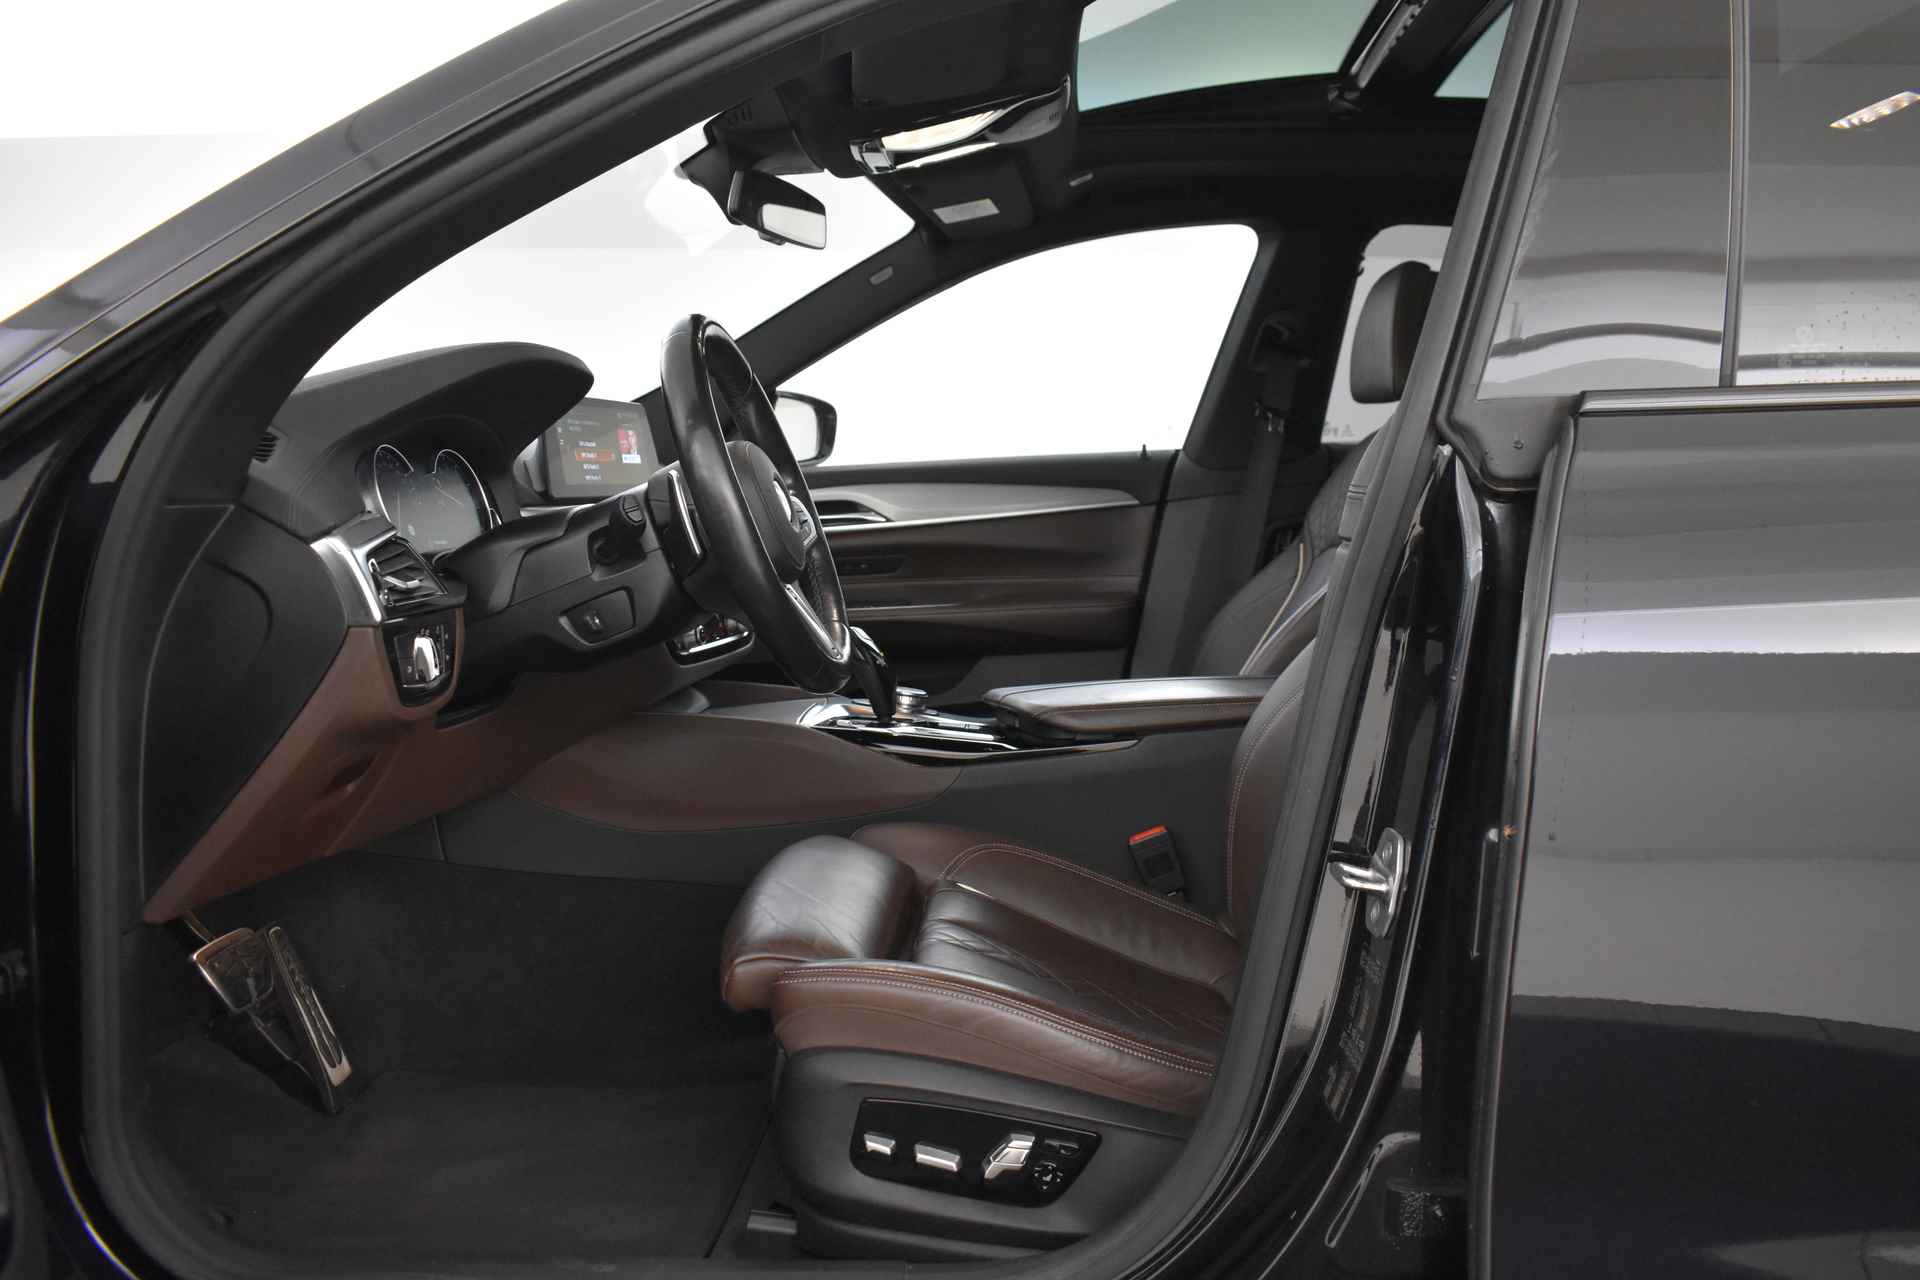 BMW 6 Serie Gran Turismo 640i High Executive M Sport Automaat / Panoramadak / Adaptieve LED / Active Cruise Control / Harman Kardon / Navigatie Professional / Comfort Access - 13/58